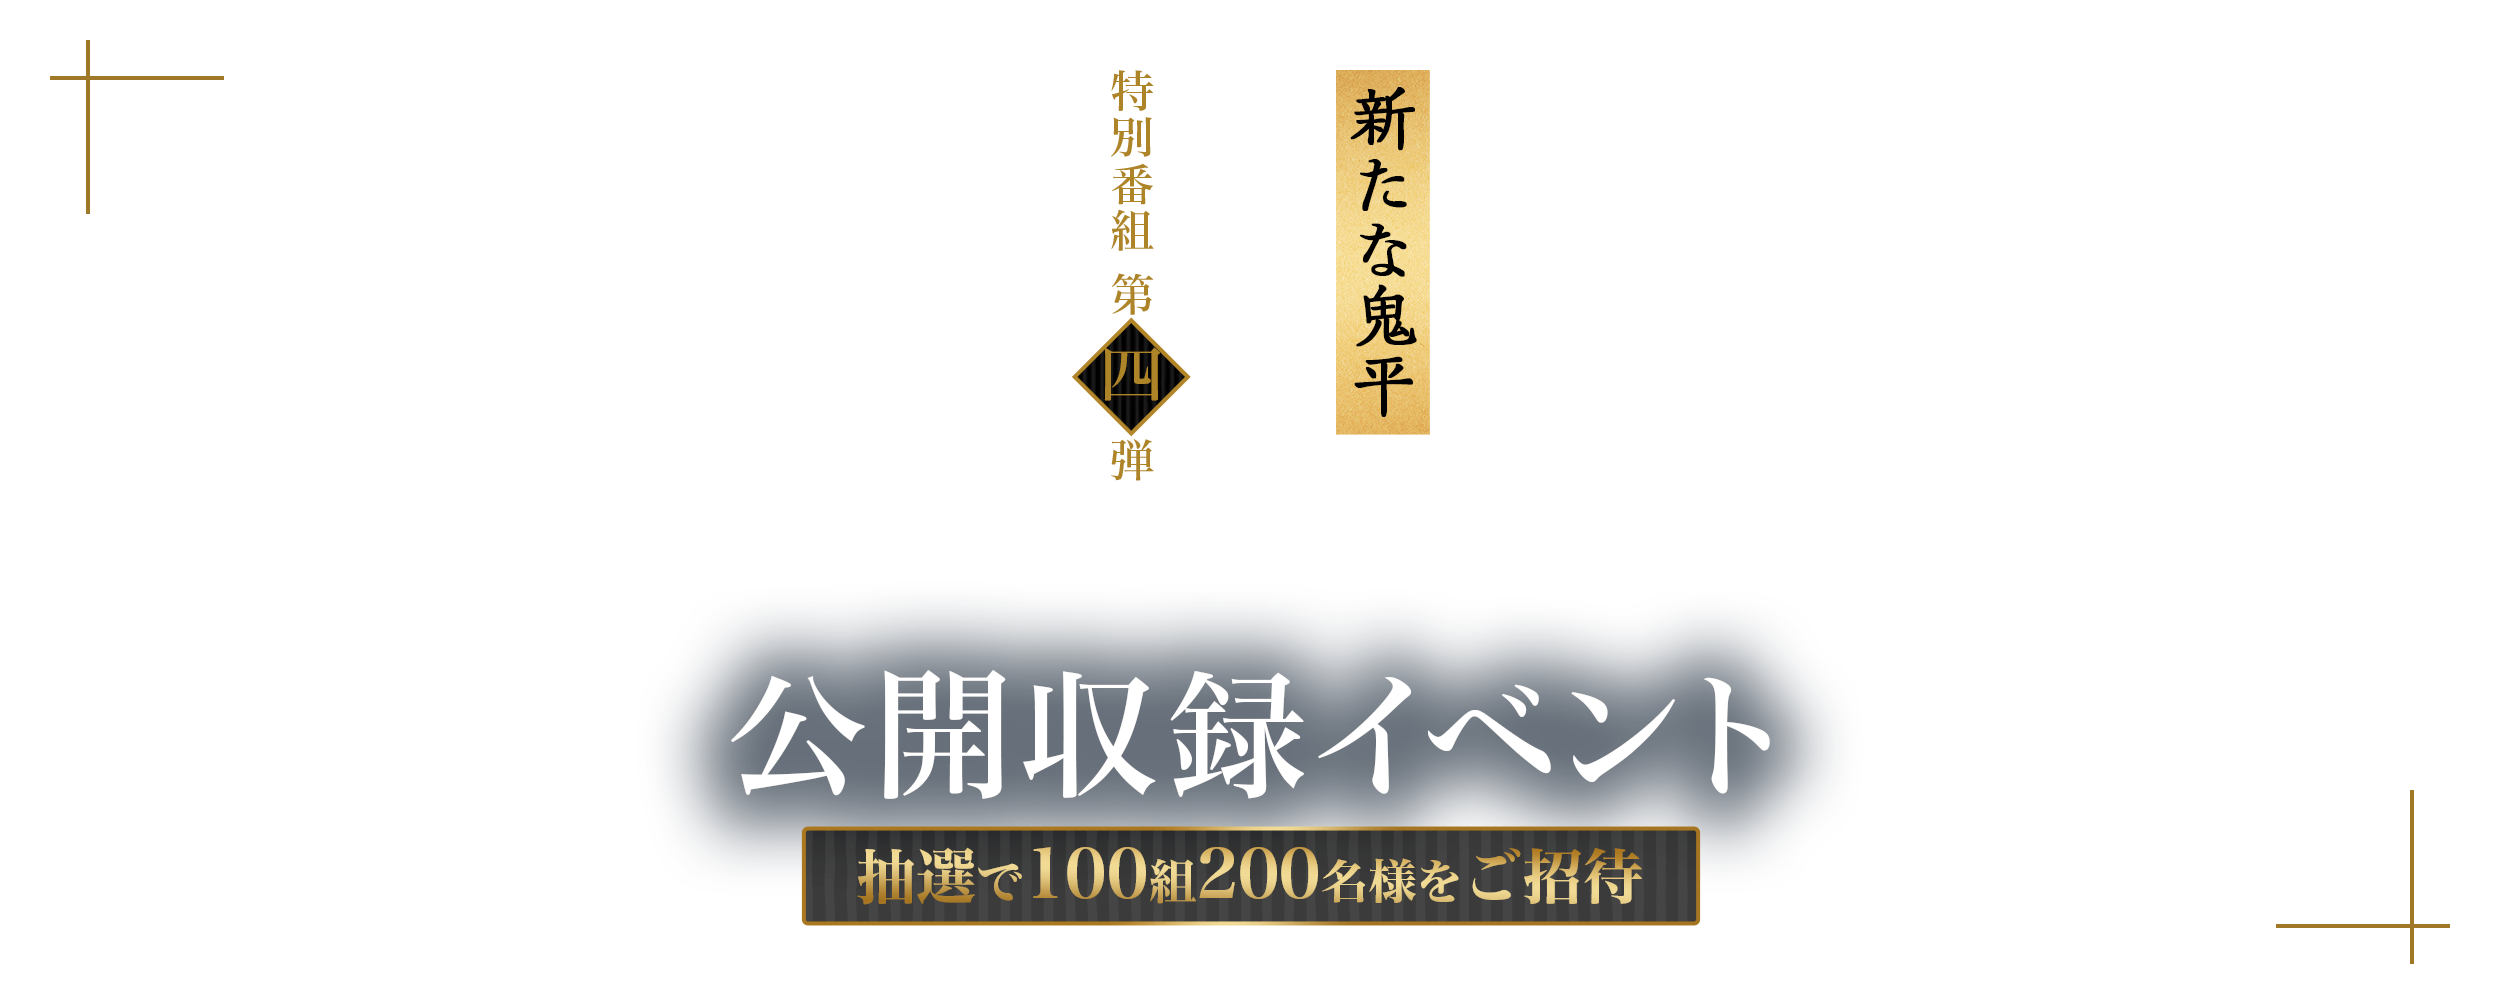 新たな鬼平 松本幸四郎 特別番組 第四弾 公開収録イベント 抽選で100組200名様をご招待